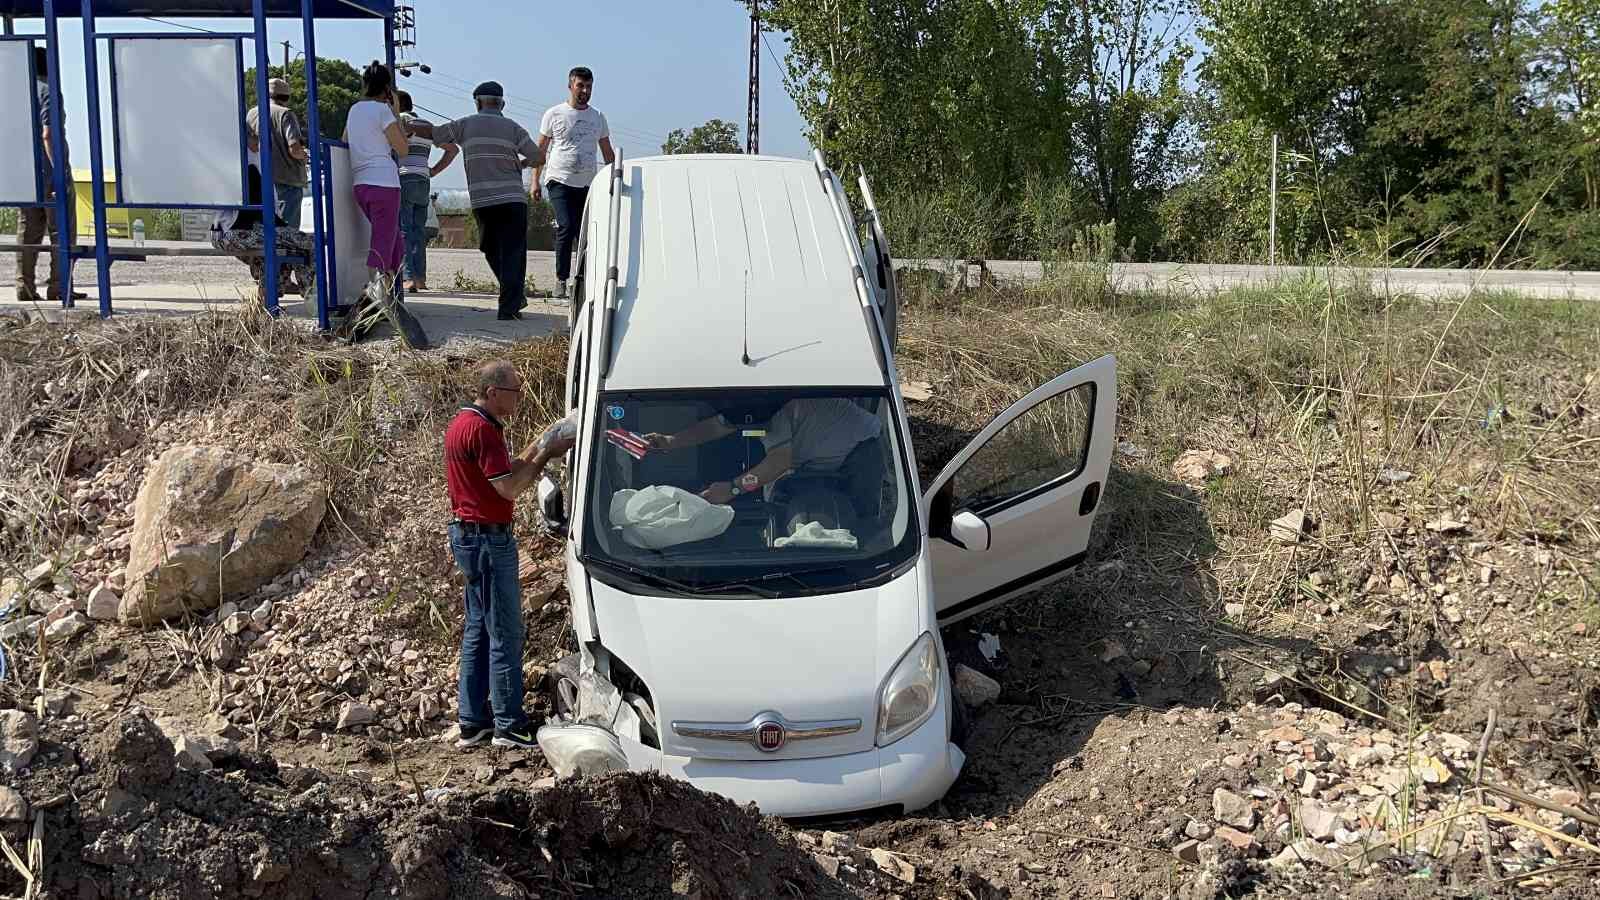 Çan’da trafik kazası: 2 yaralı